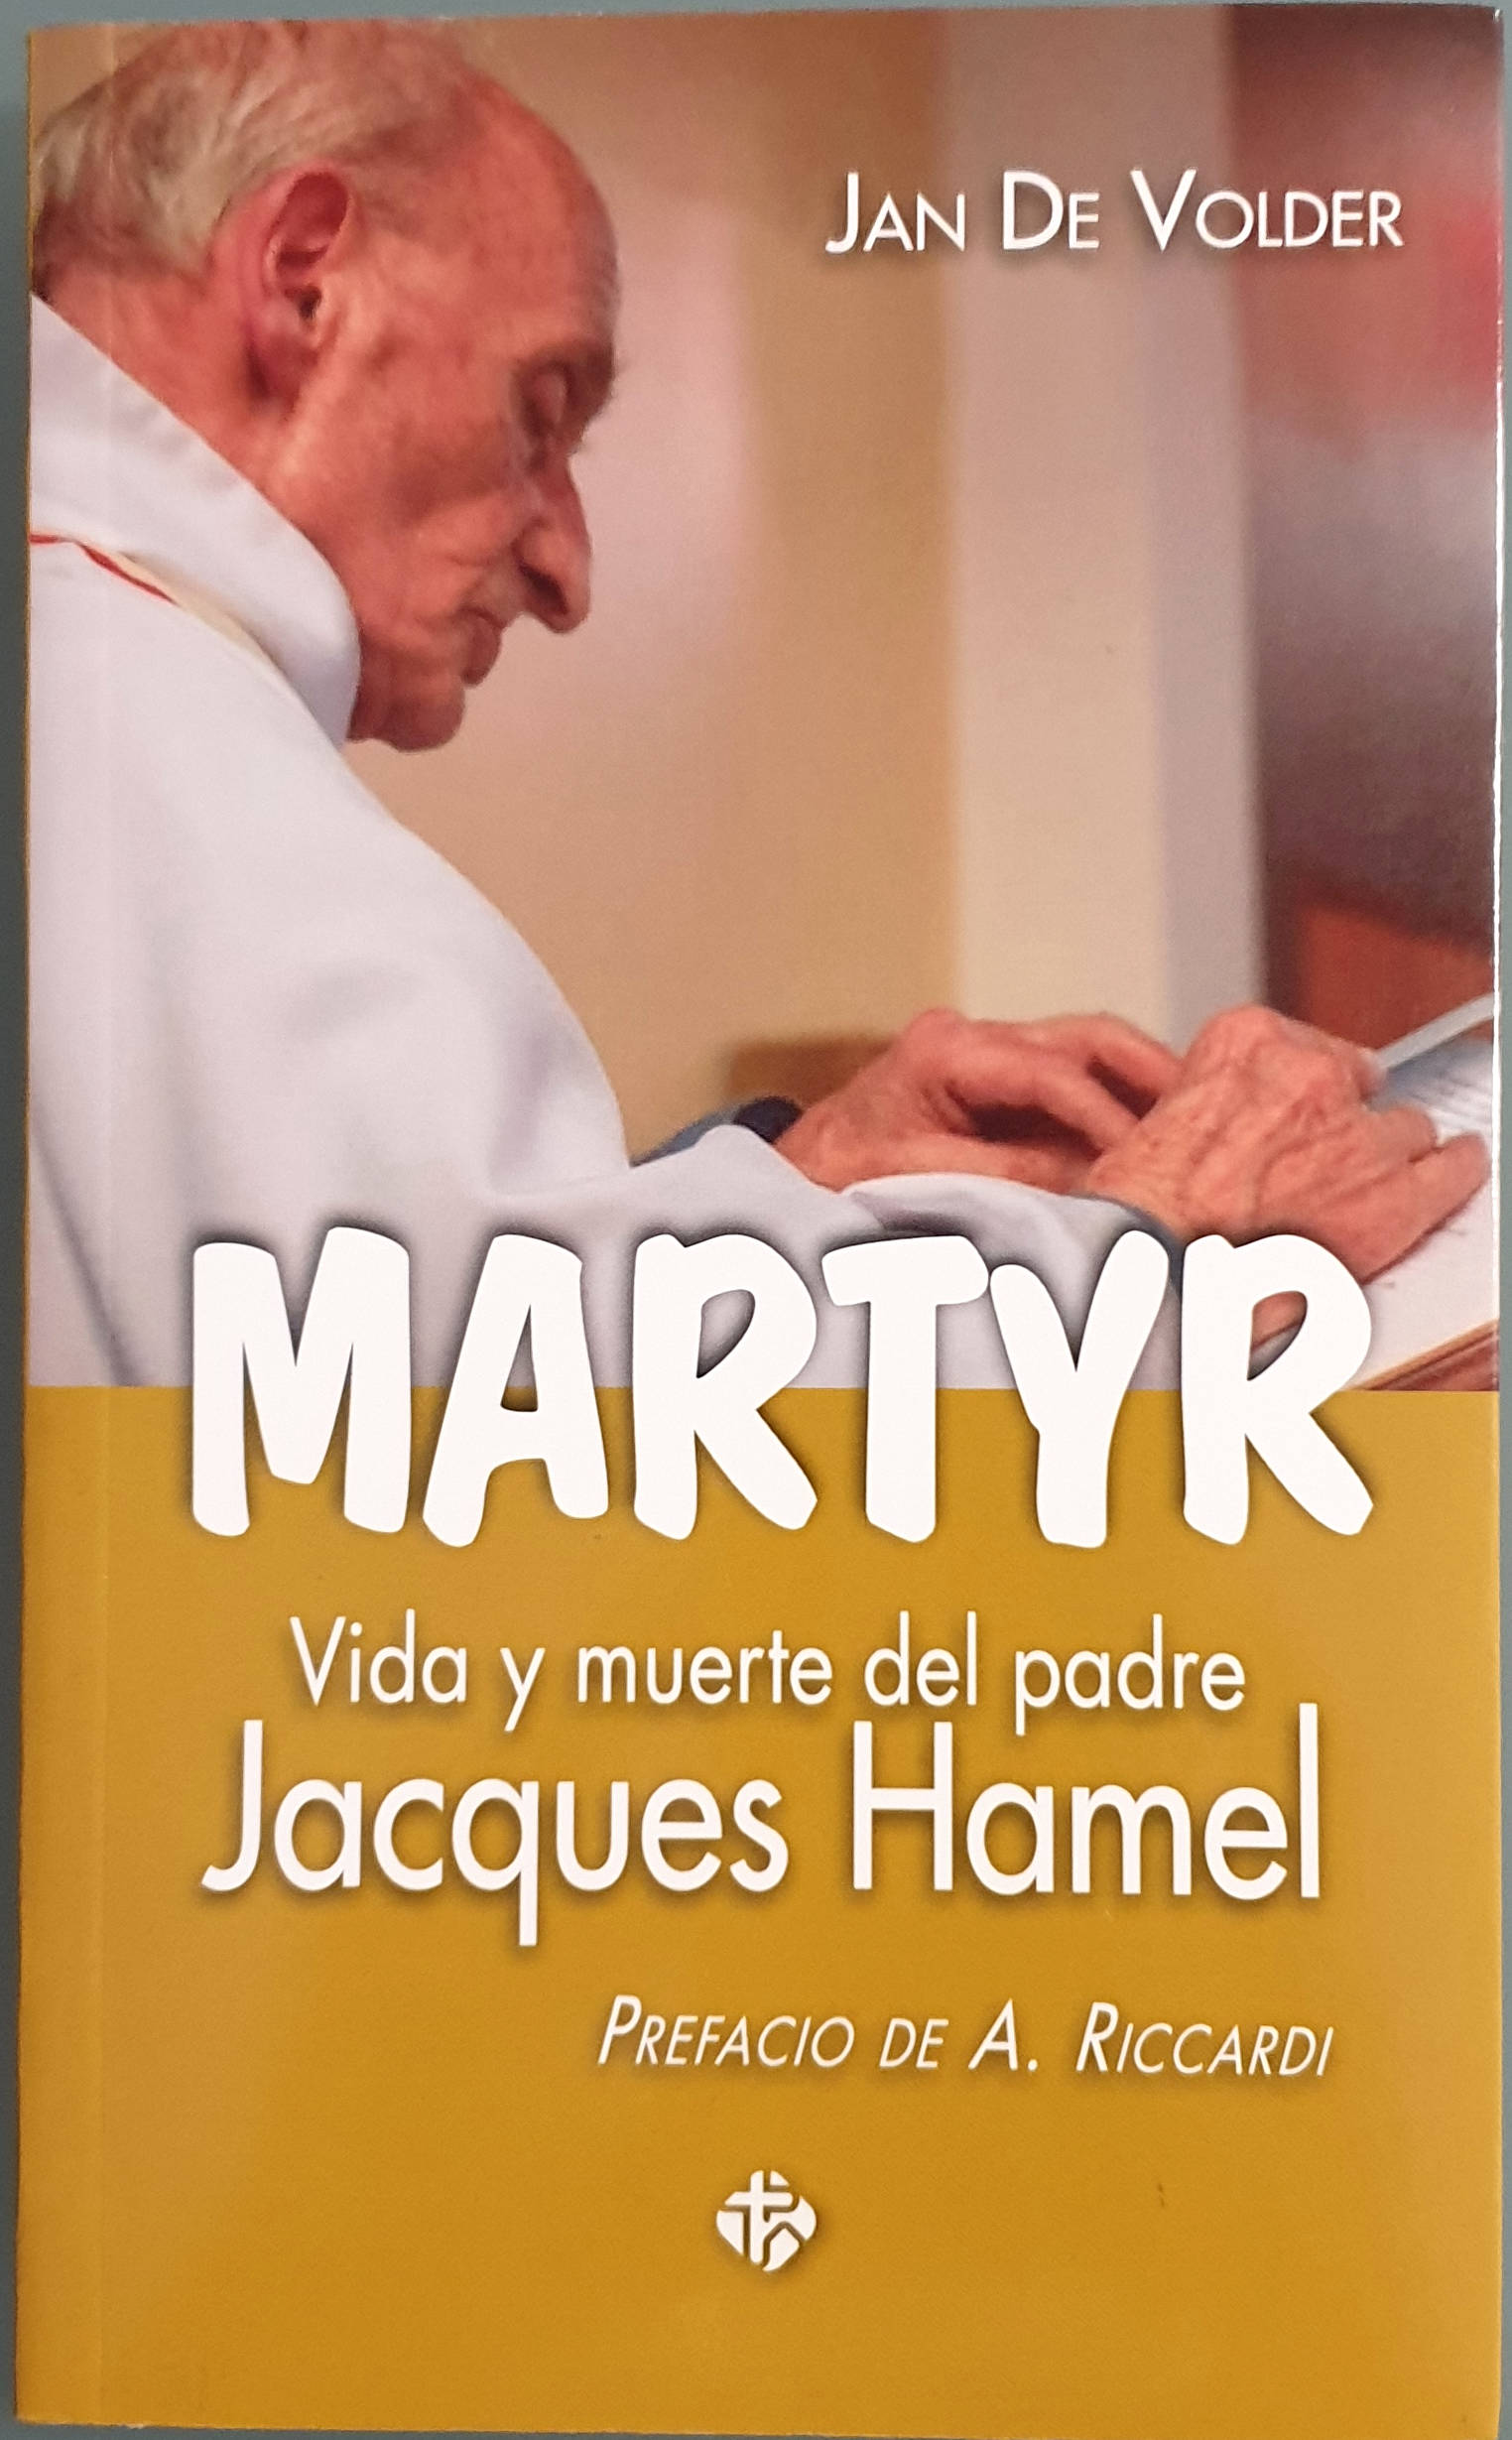 Martyr. Vida y muerte del padre Jacques Hamel - Volder, Jan de